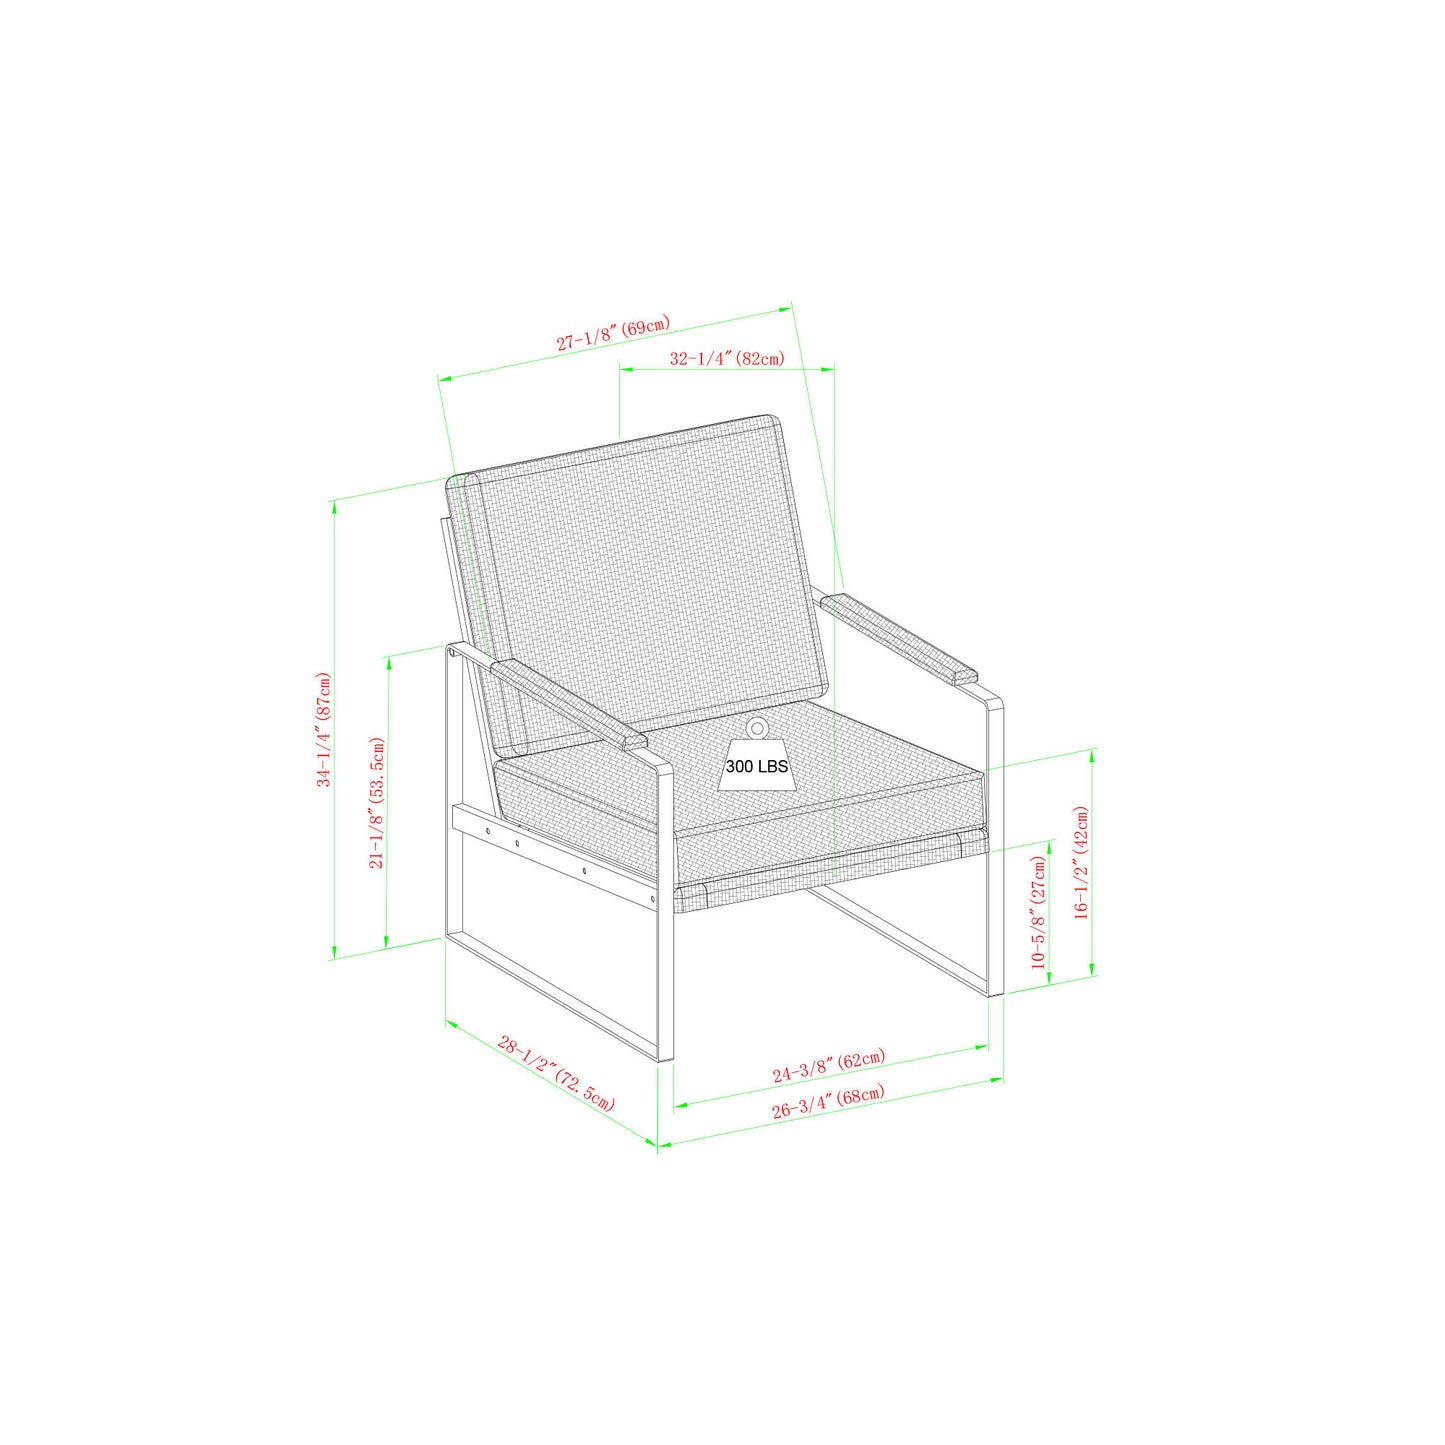 Contemporary Square Metal Frame Accent Chair – Indigo Blue / Black